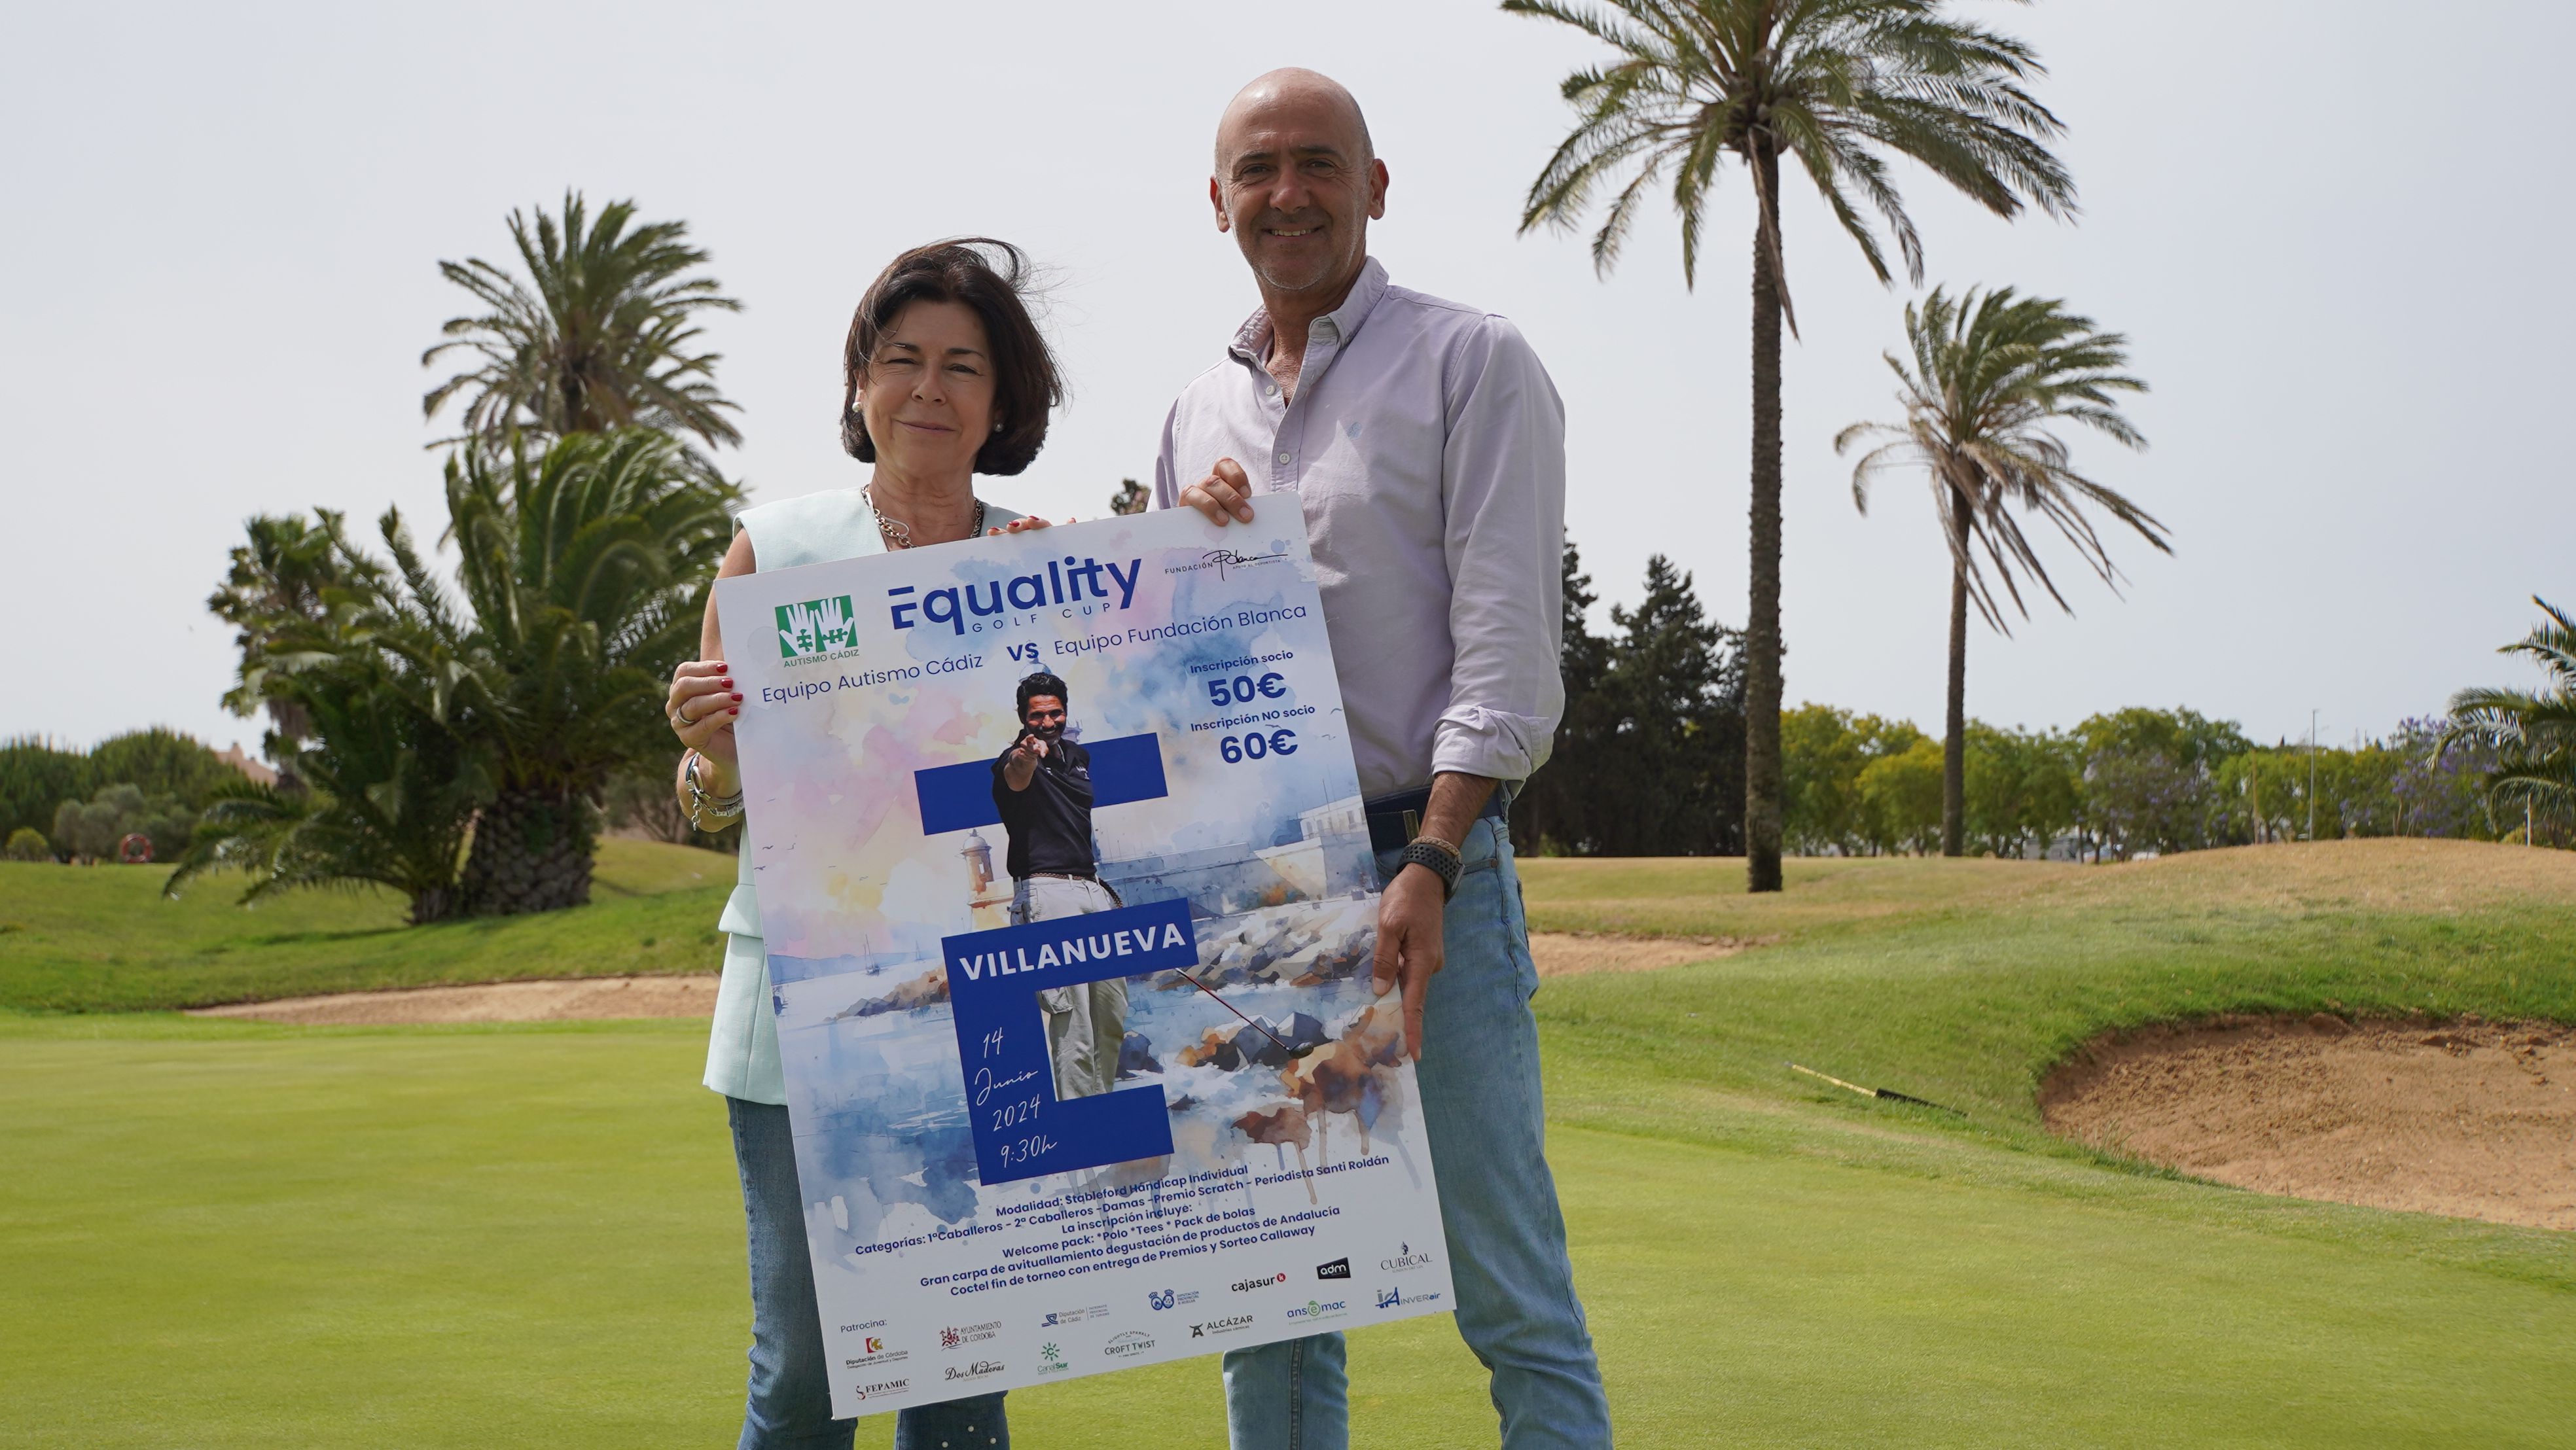 Representantes de Autismo Cádiz con el cartel del evento.